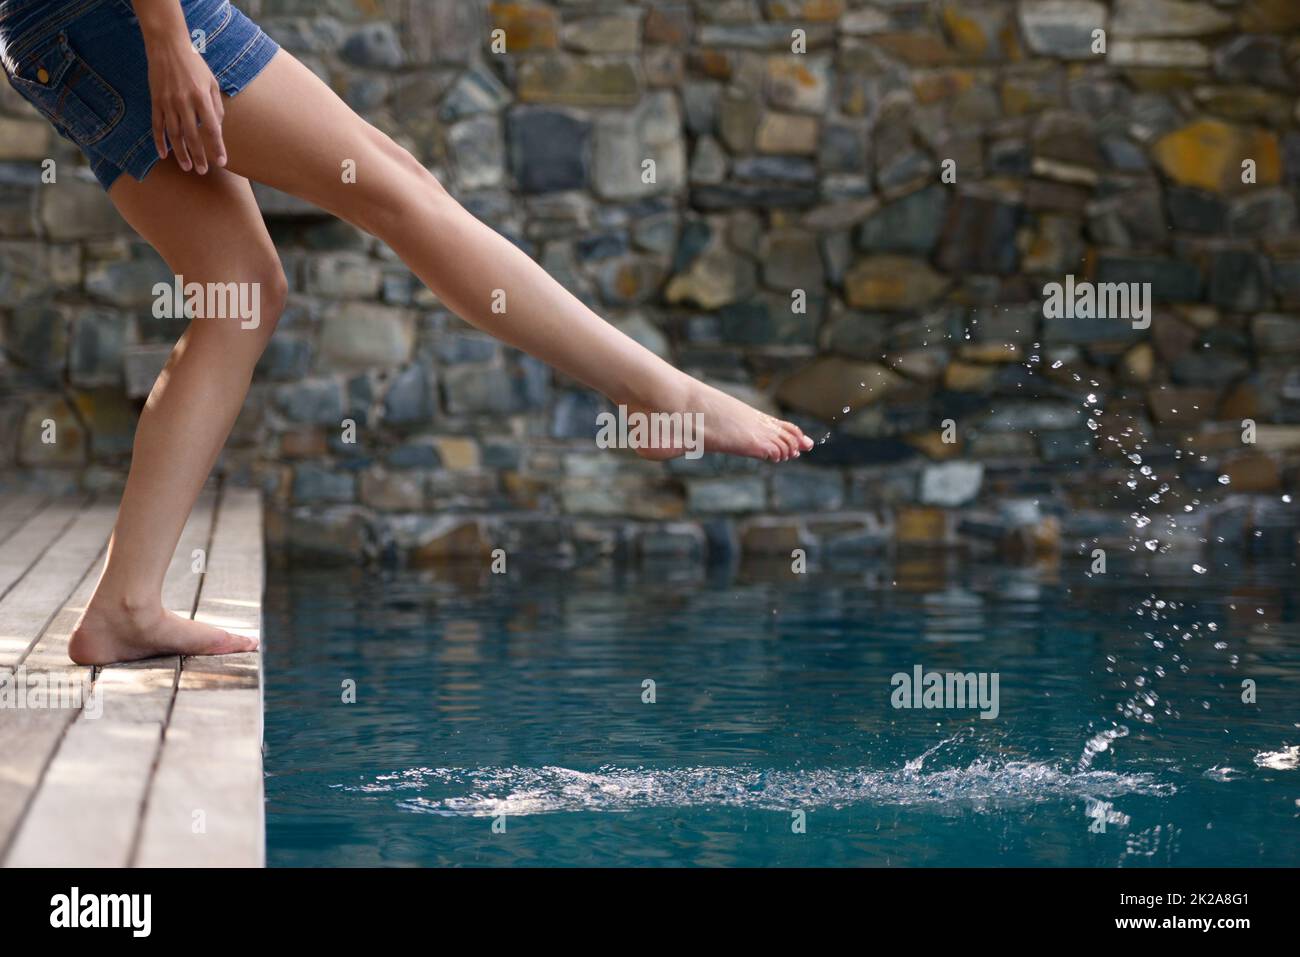 Einfach nur herumplanschen. Ein kurzer Schuss einer jungen Frau, die das Wasser eines Schwimmbades testet. Stockfoto